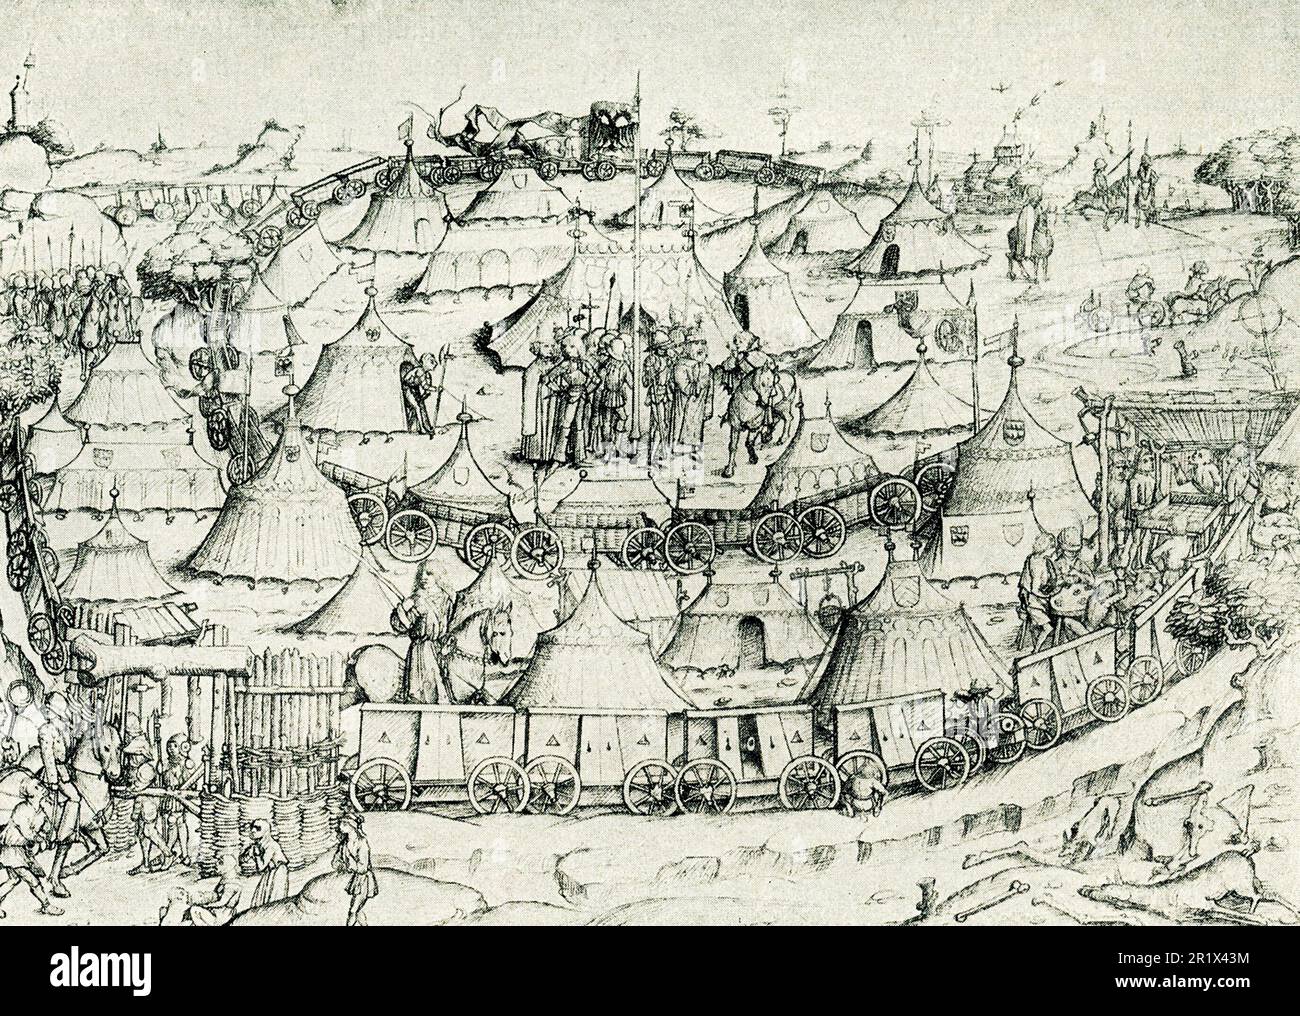 Un wagon-fort au Moyen-âge, un dessin de plume tiré du par les princes de Waldburg-Wolfegg (Allemagne). » Waldburg-Wolfegg était un comté dirigé par la Maison de Wadlburg, située dans le sud-est du Bade-Wurtemberg, en Allemagne. Banque D'Images